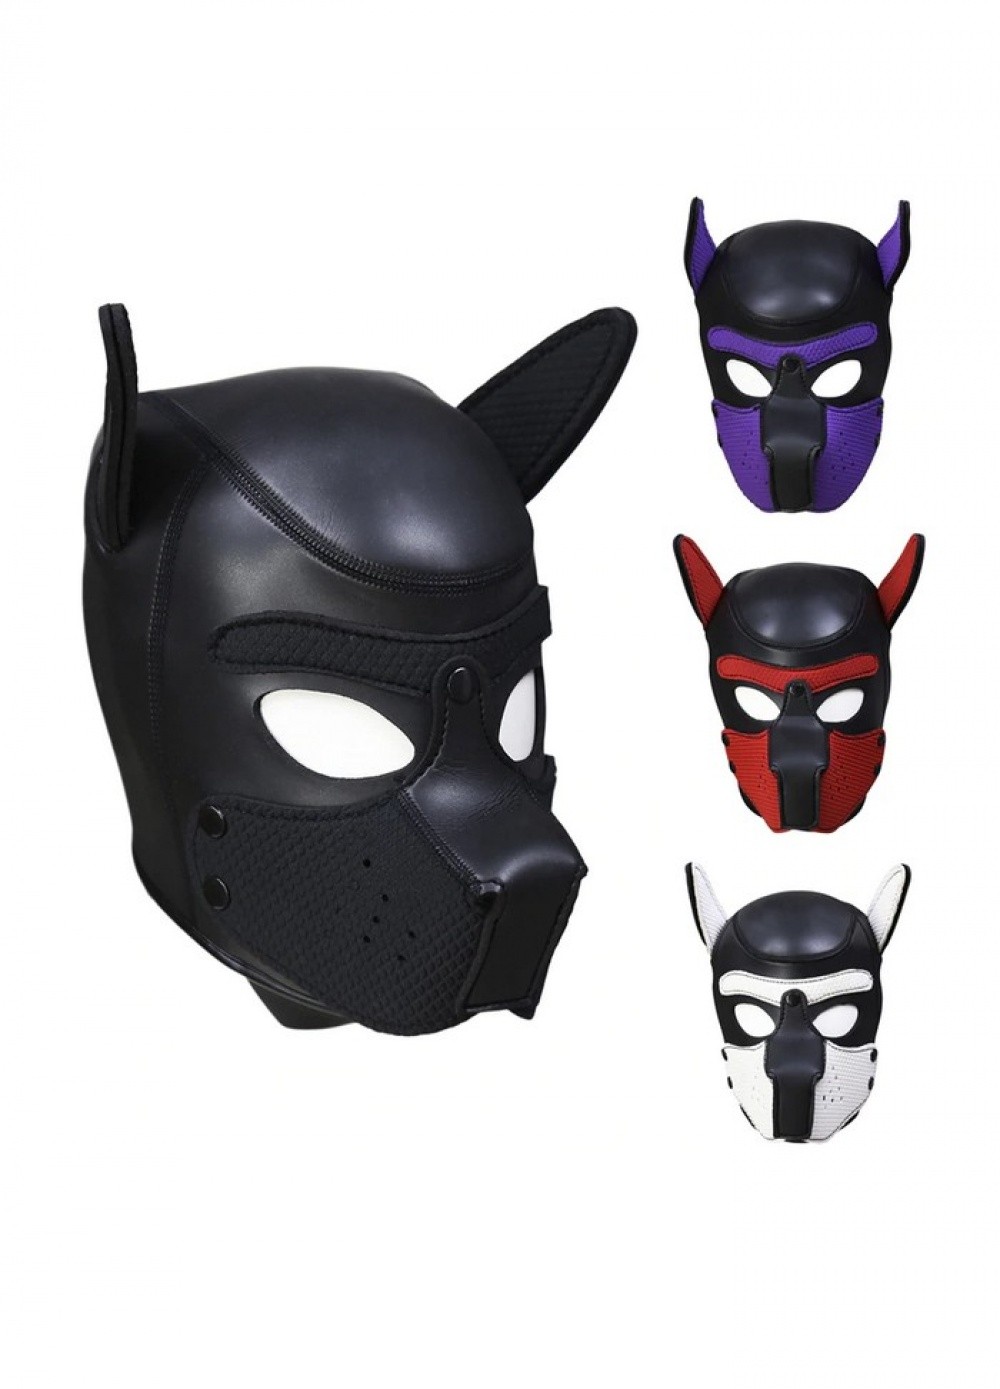 Cagoule masque chien caoutchouc et spandex noir noir-violet-rouge-blanc